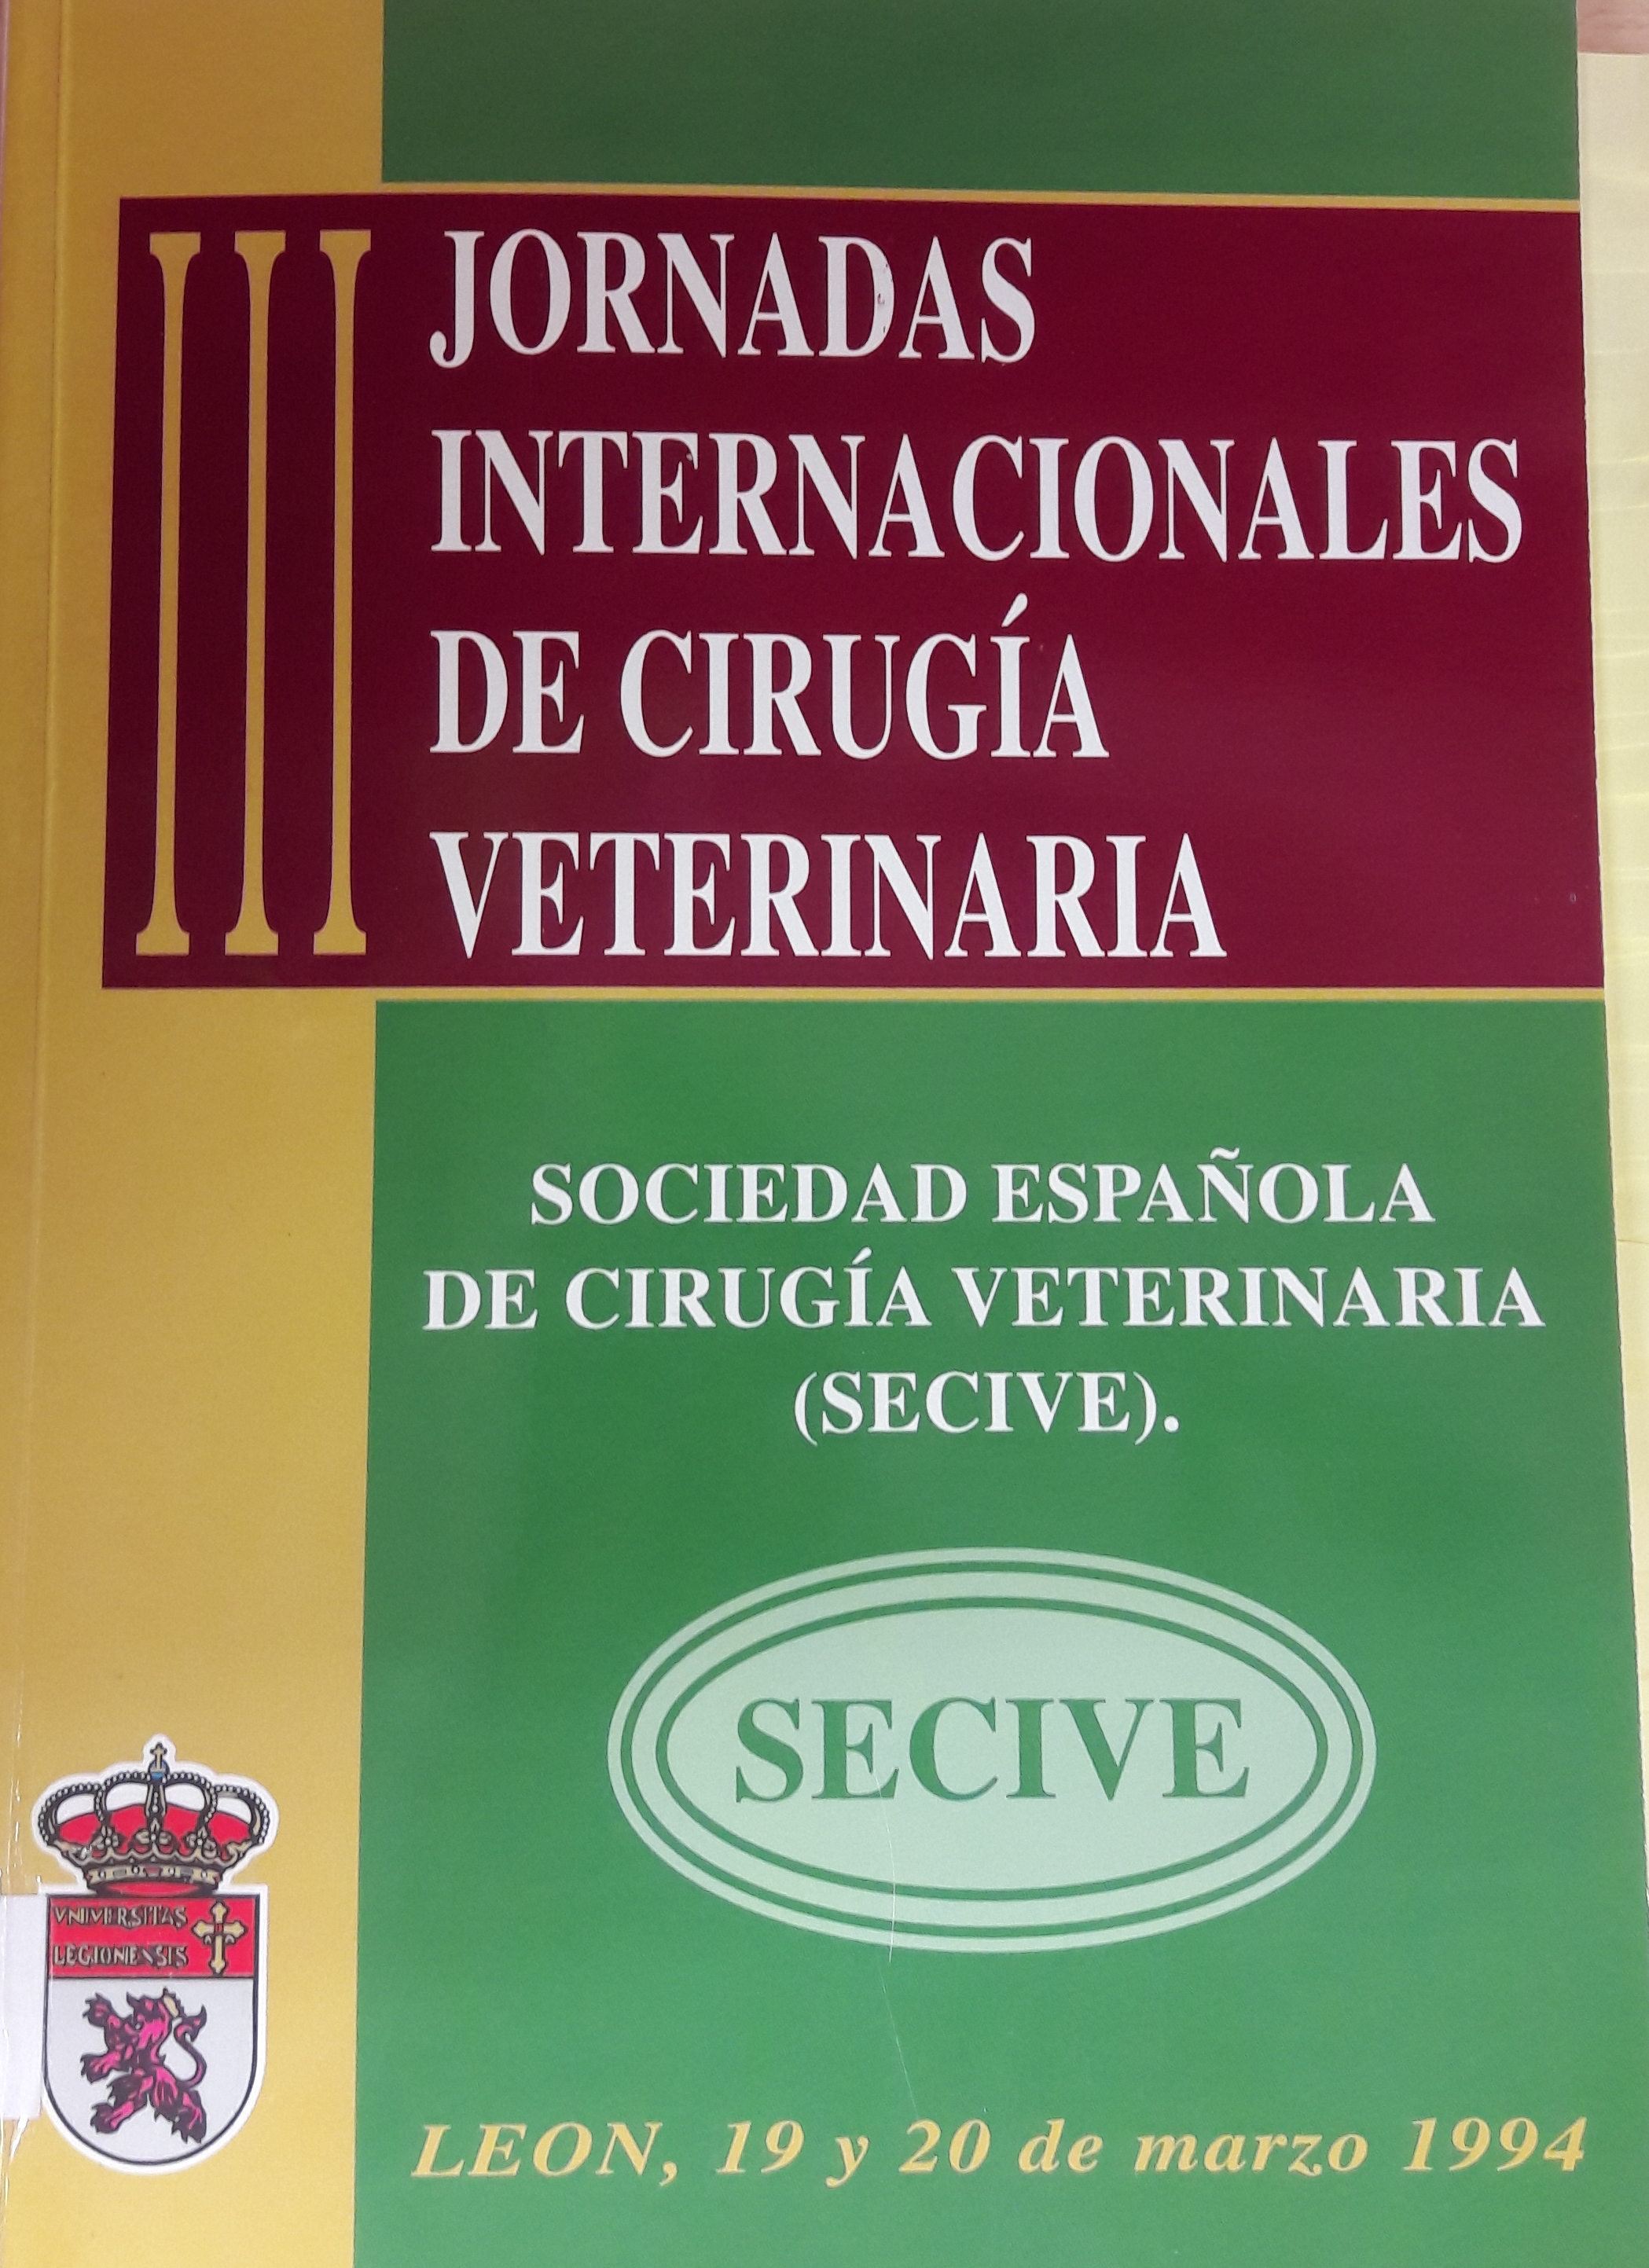 Imagen de portada del libro III Jornadas Internacionales de Cirugía Veterinaria